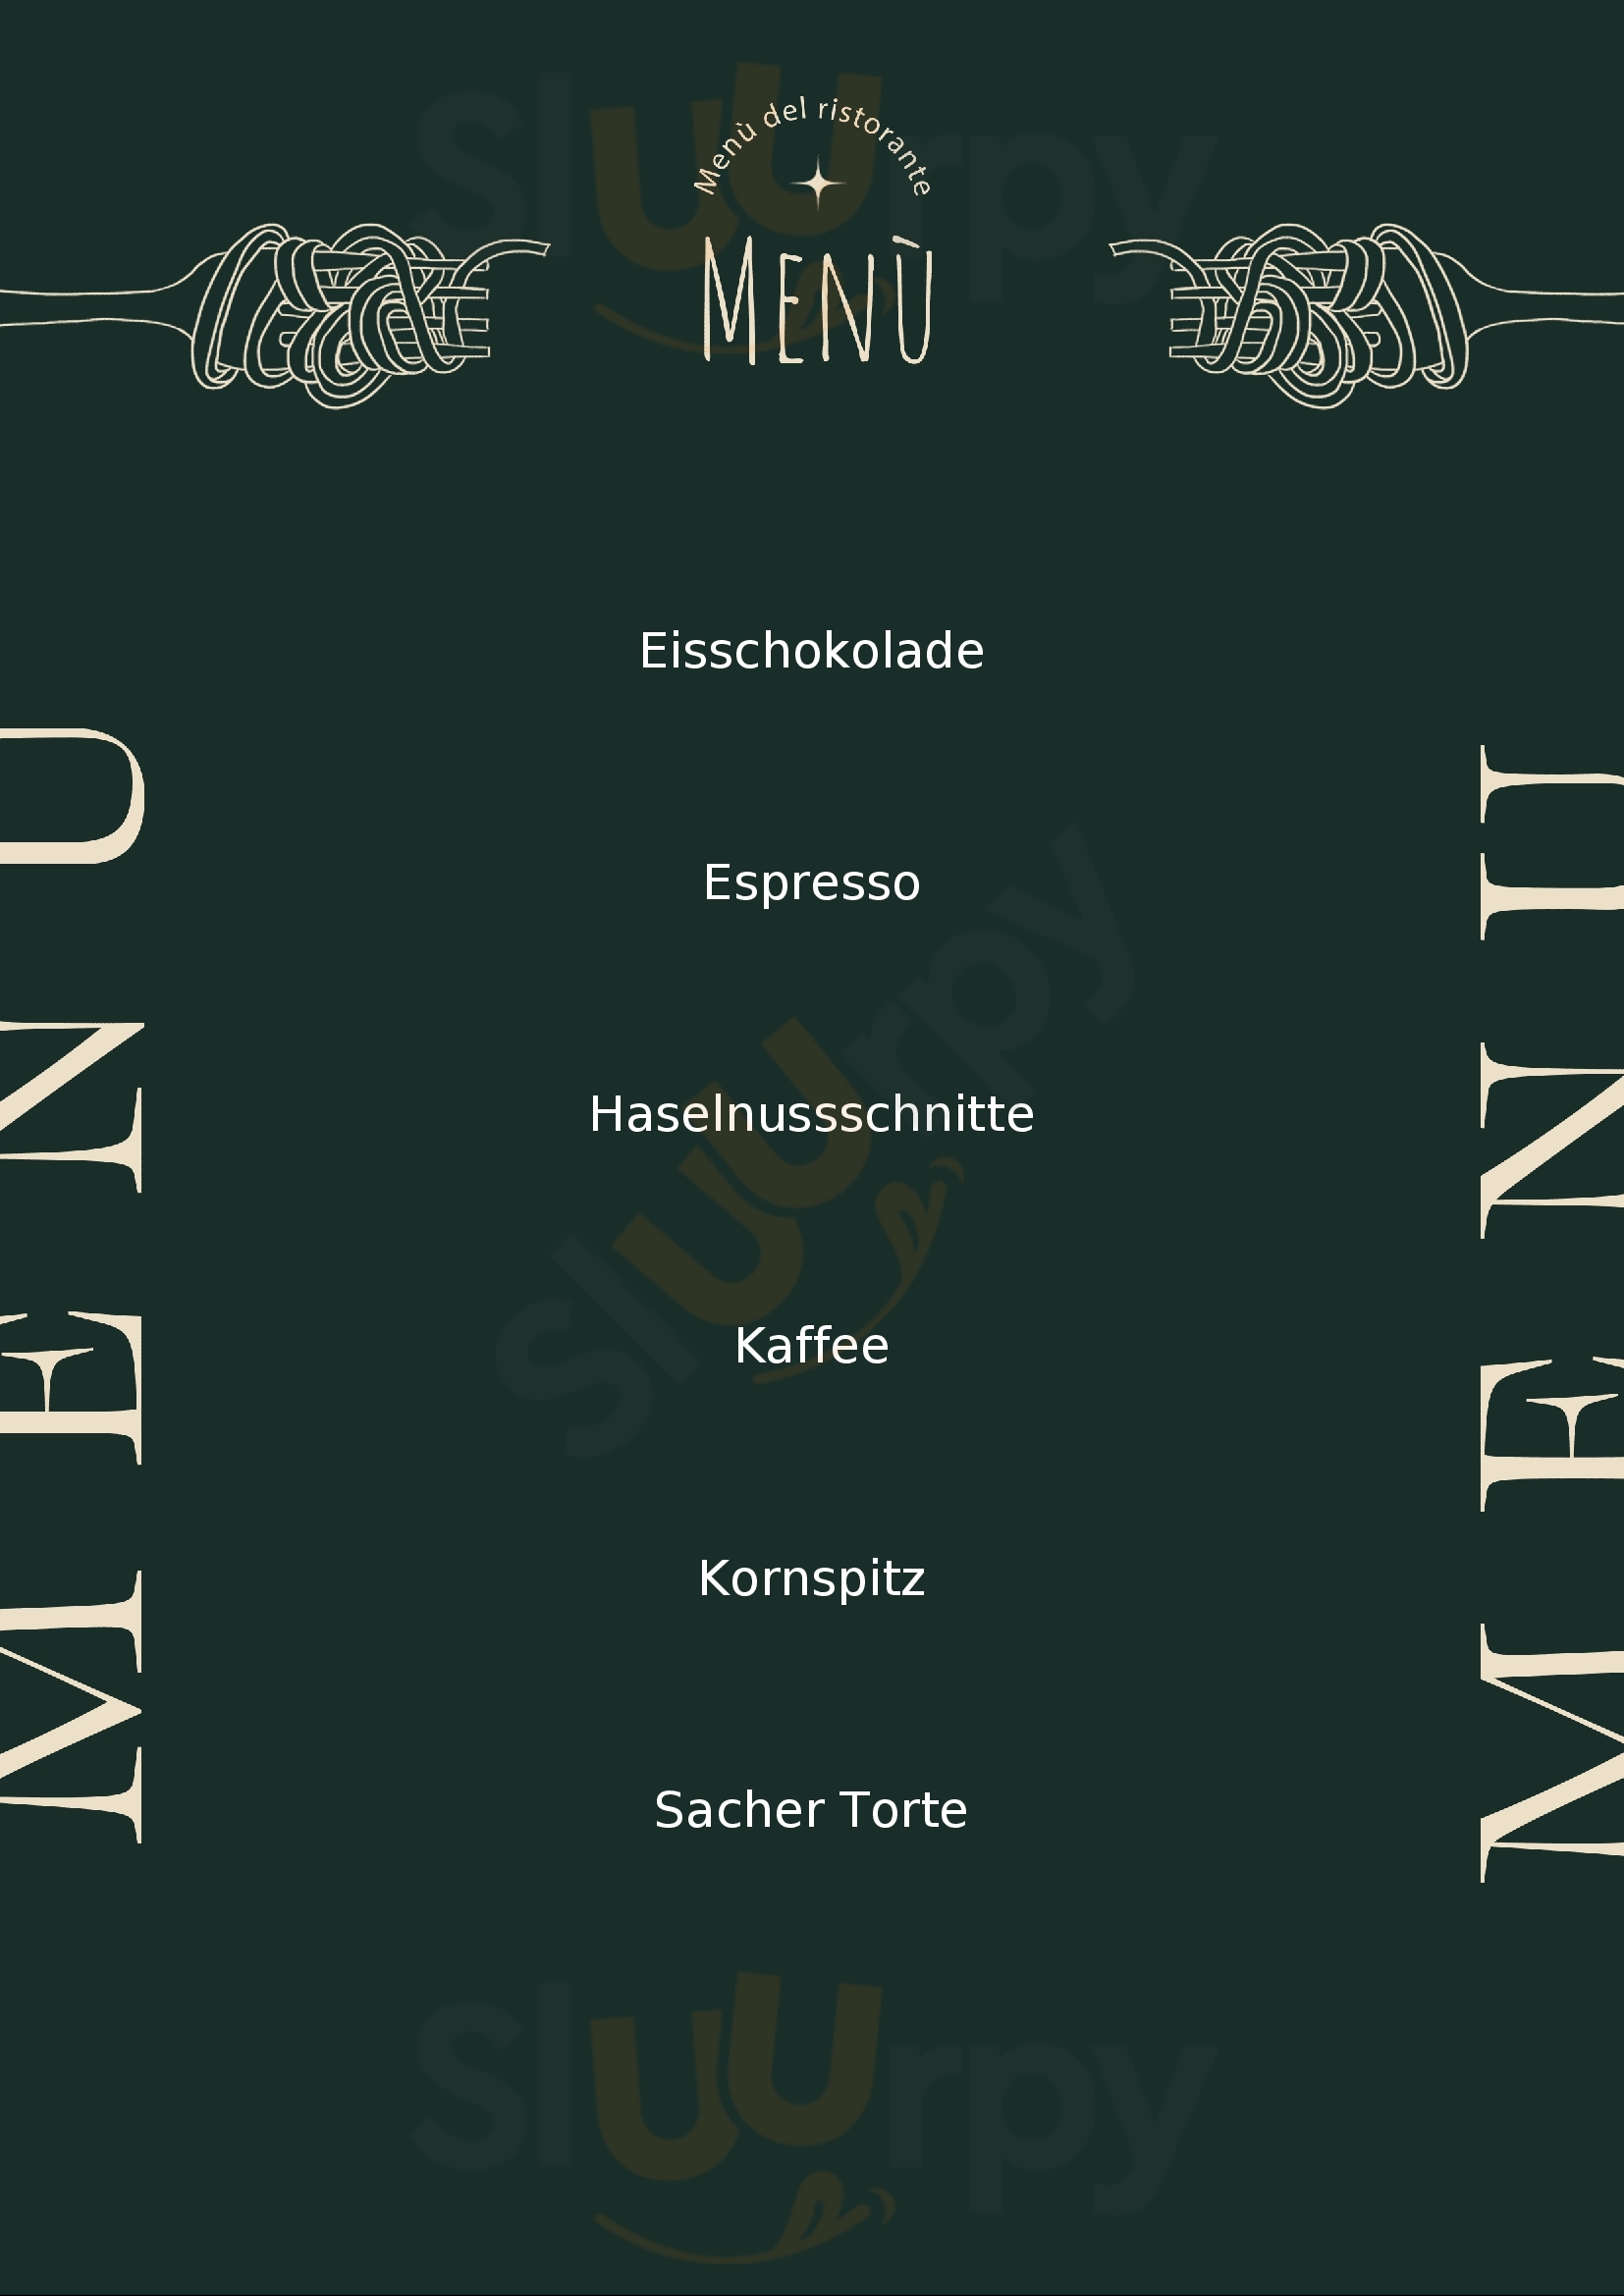 Cafe Ramsauer Bad Ischl Menu - 1